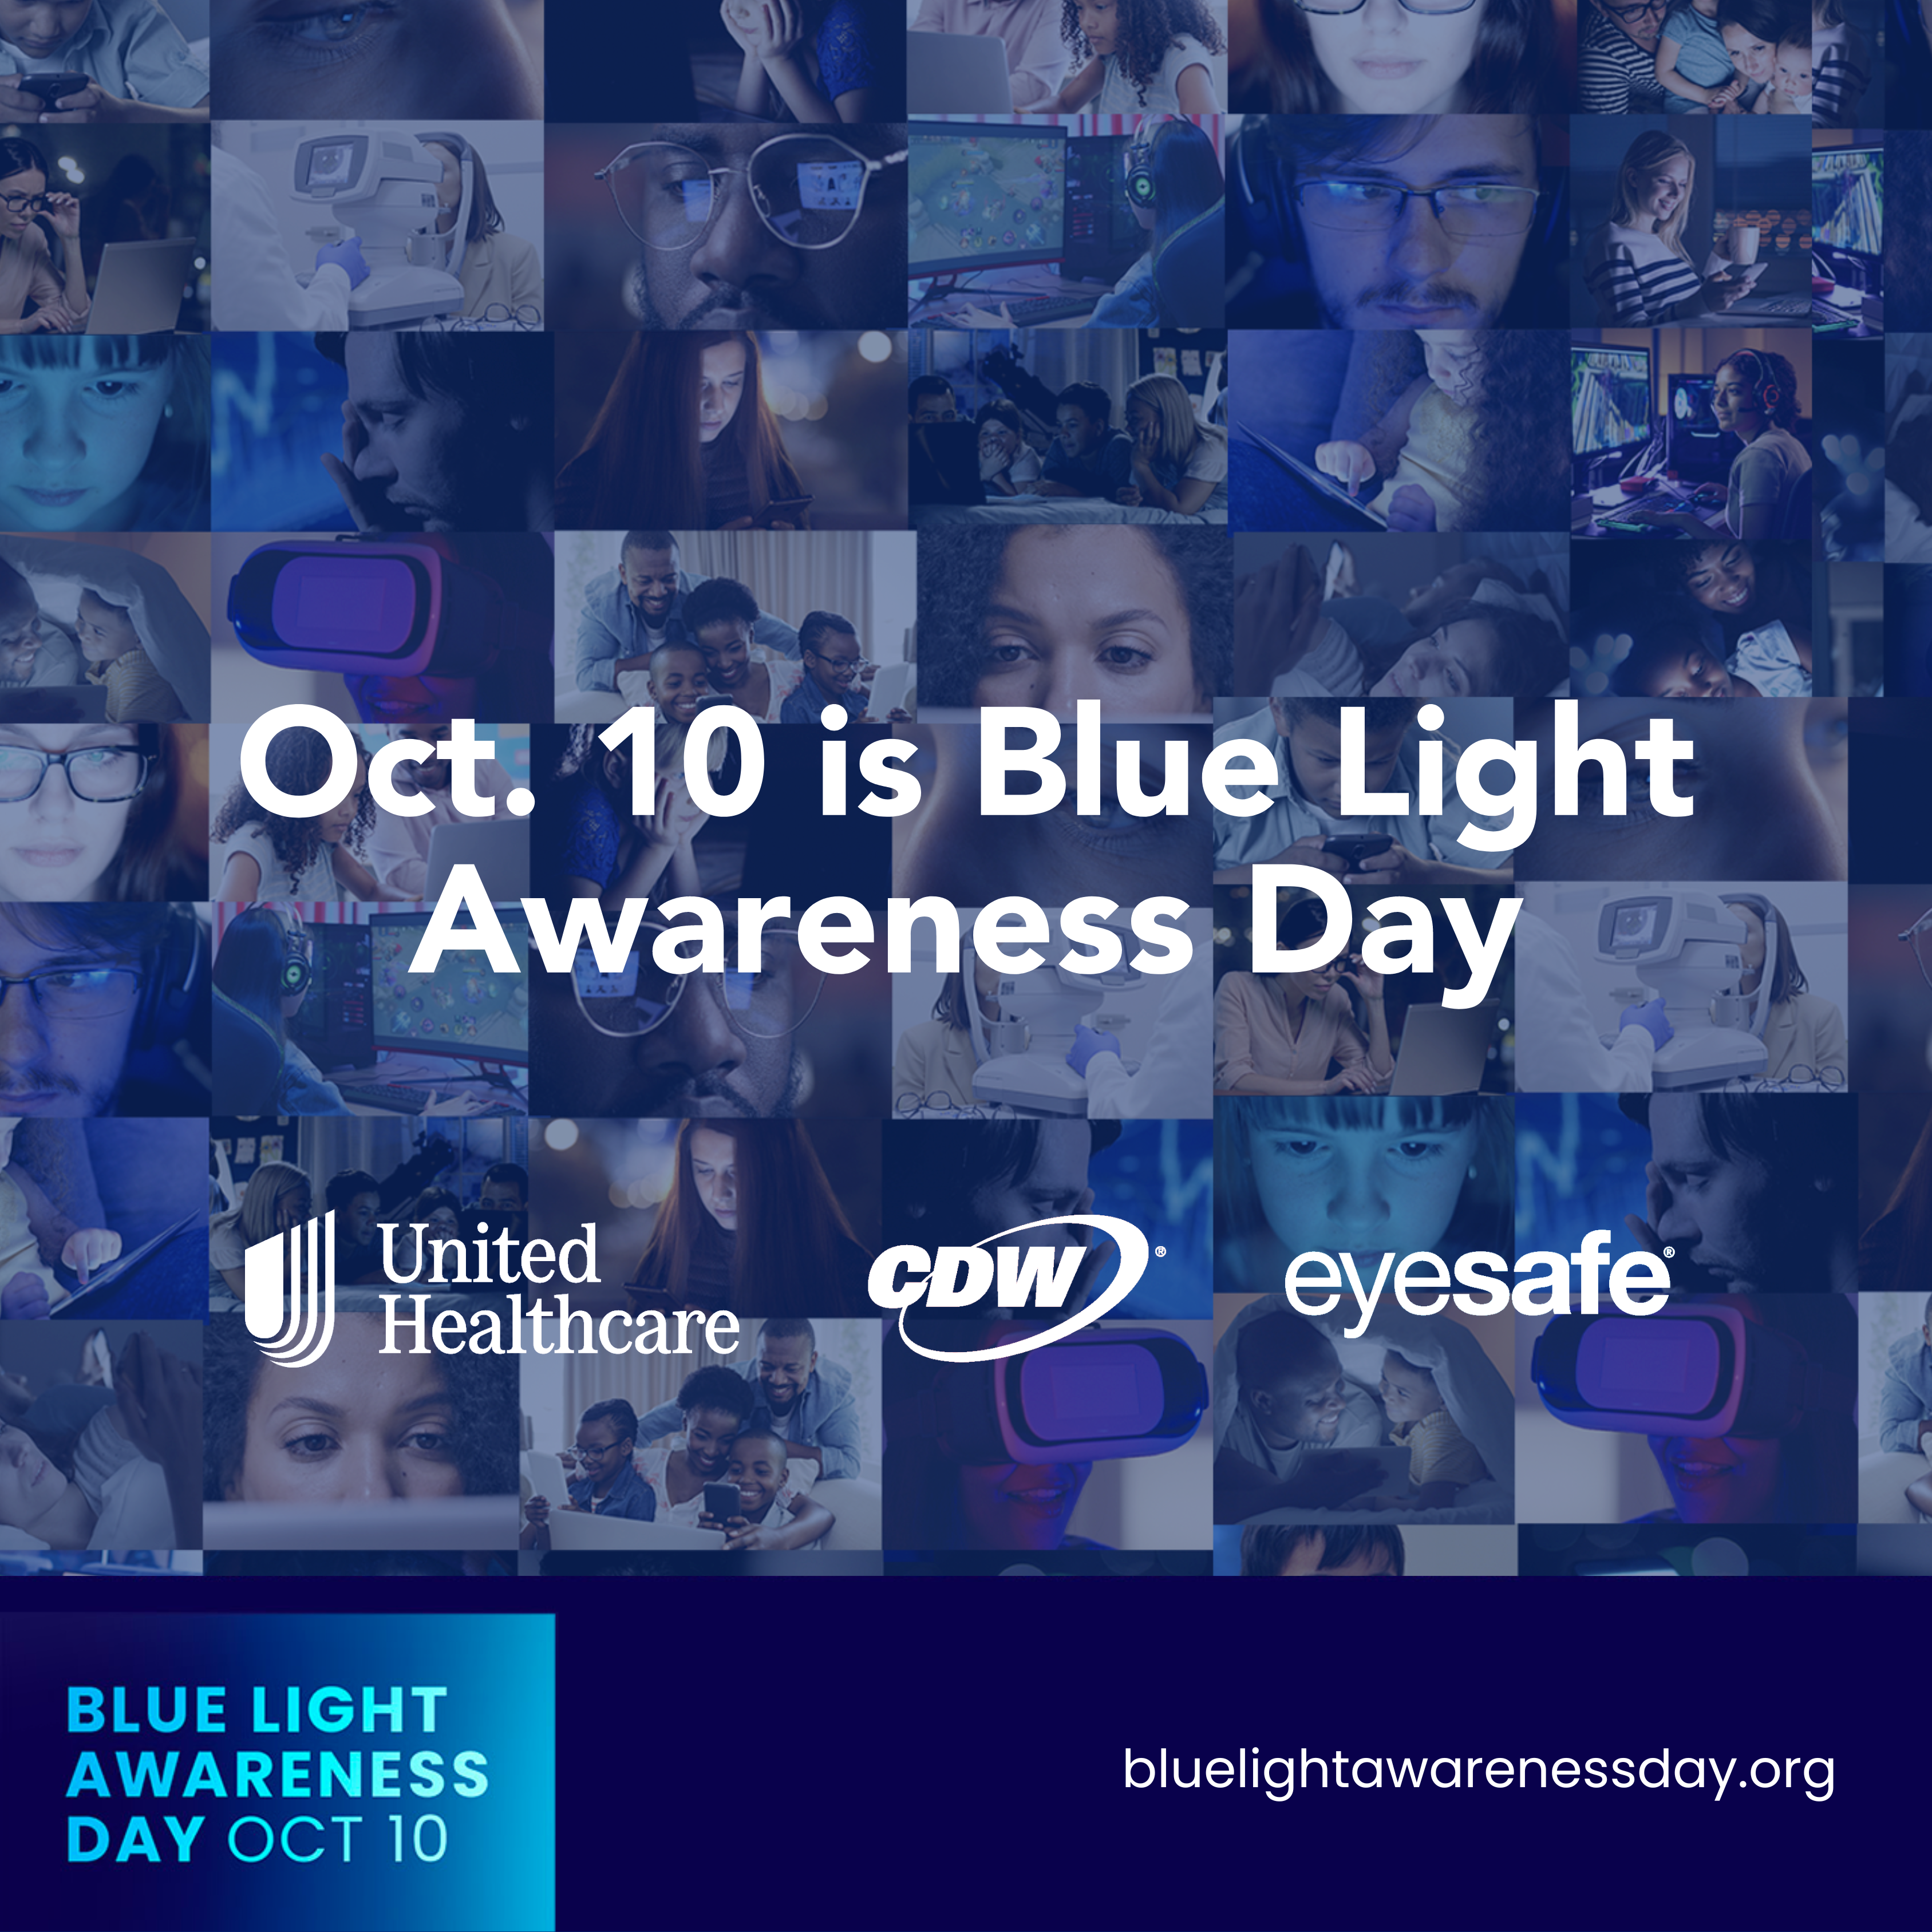 Oct. 10 is Blue Light Awareness Day